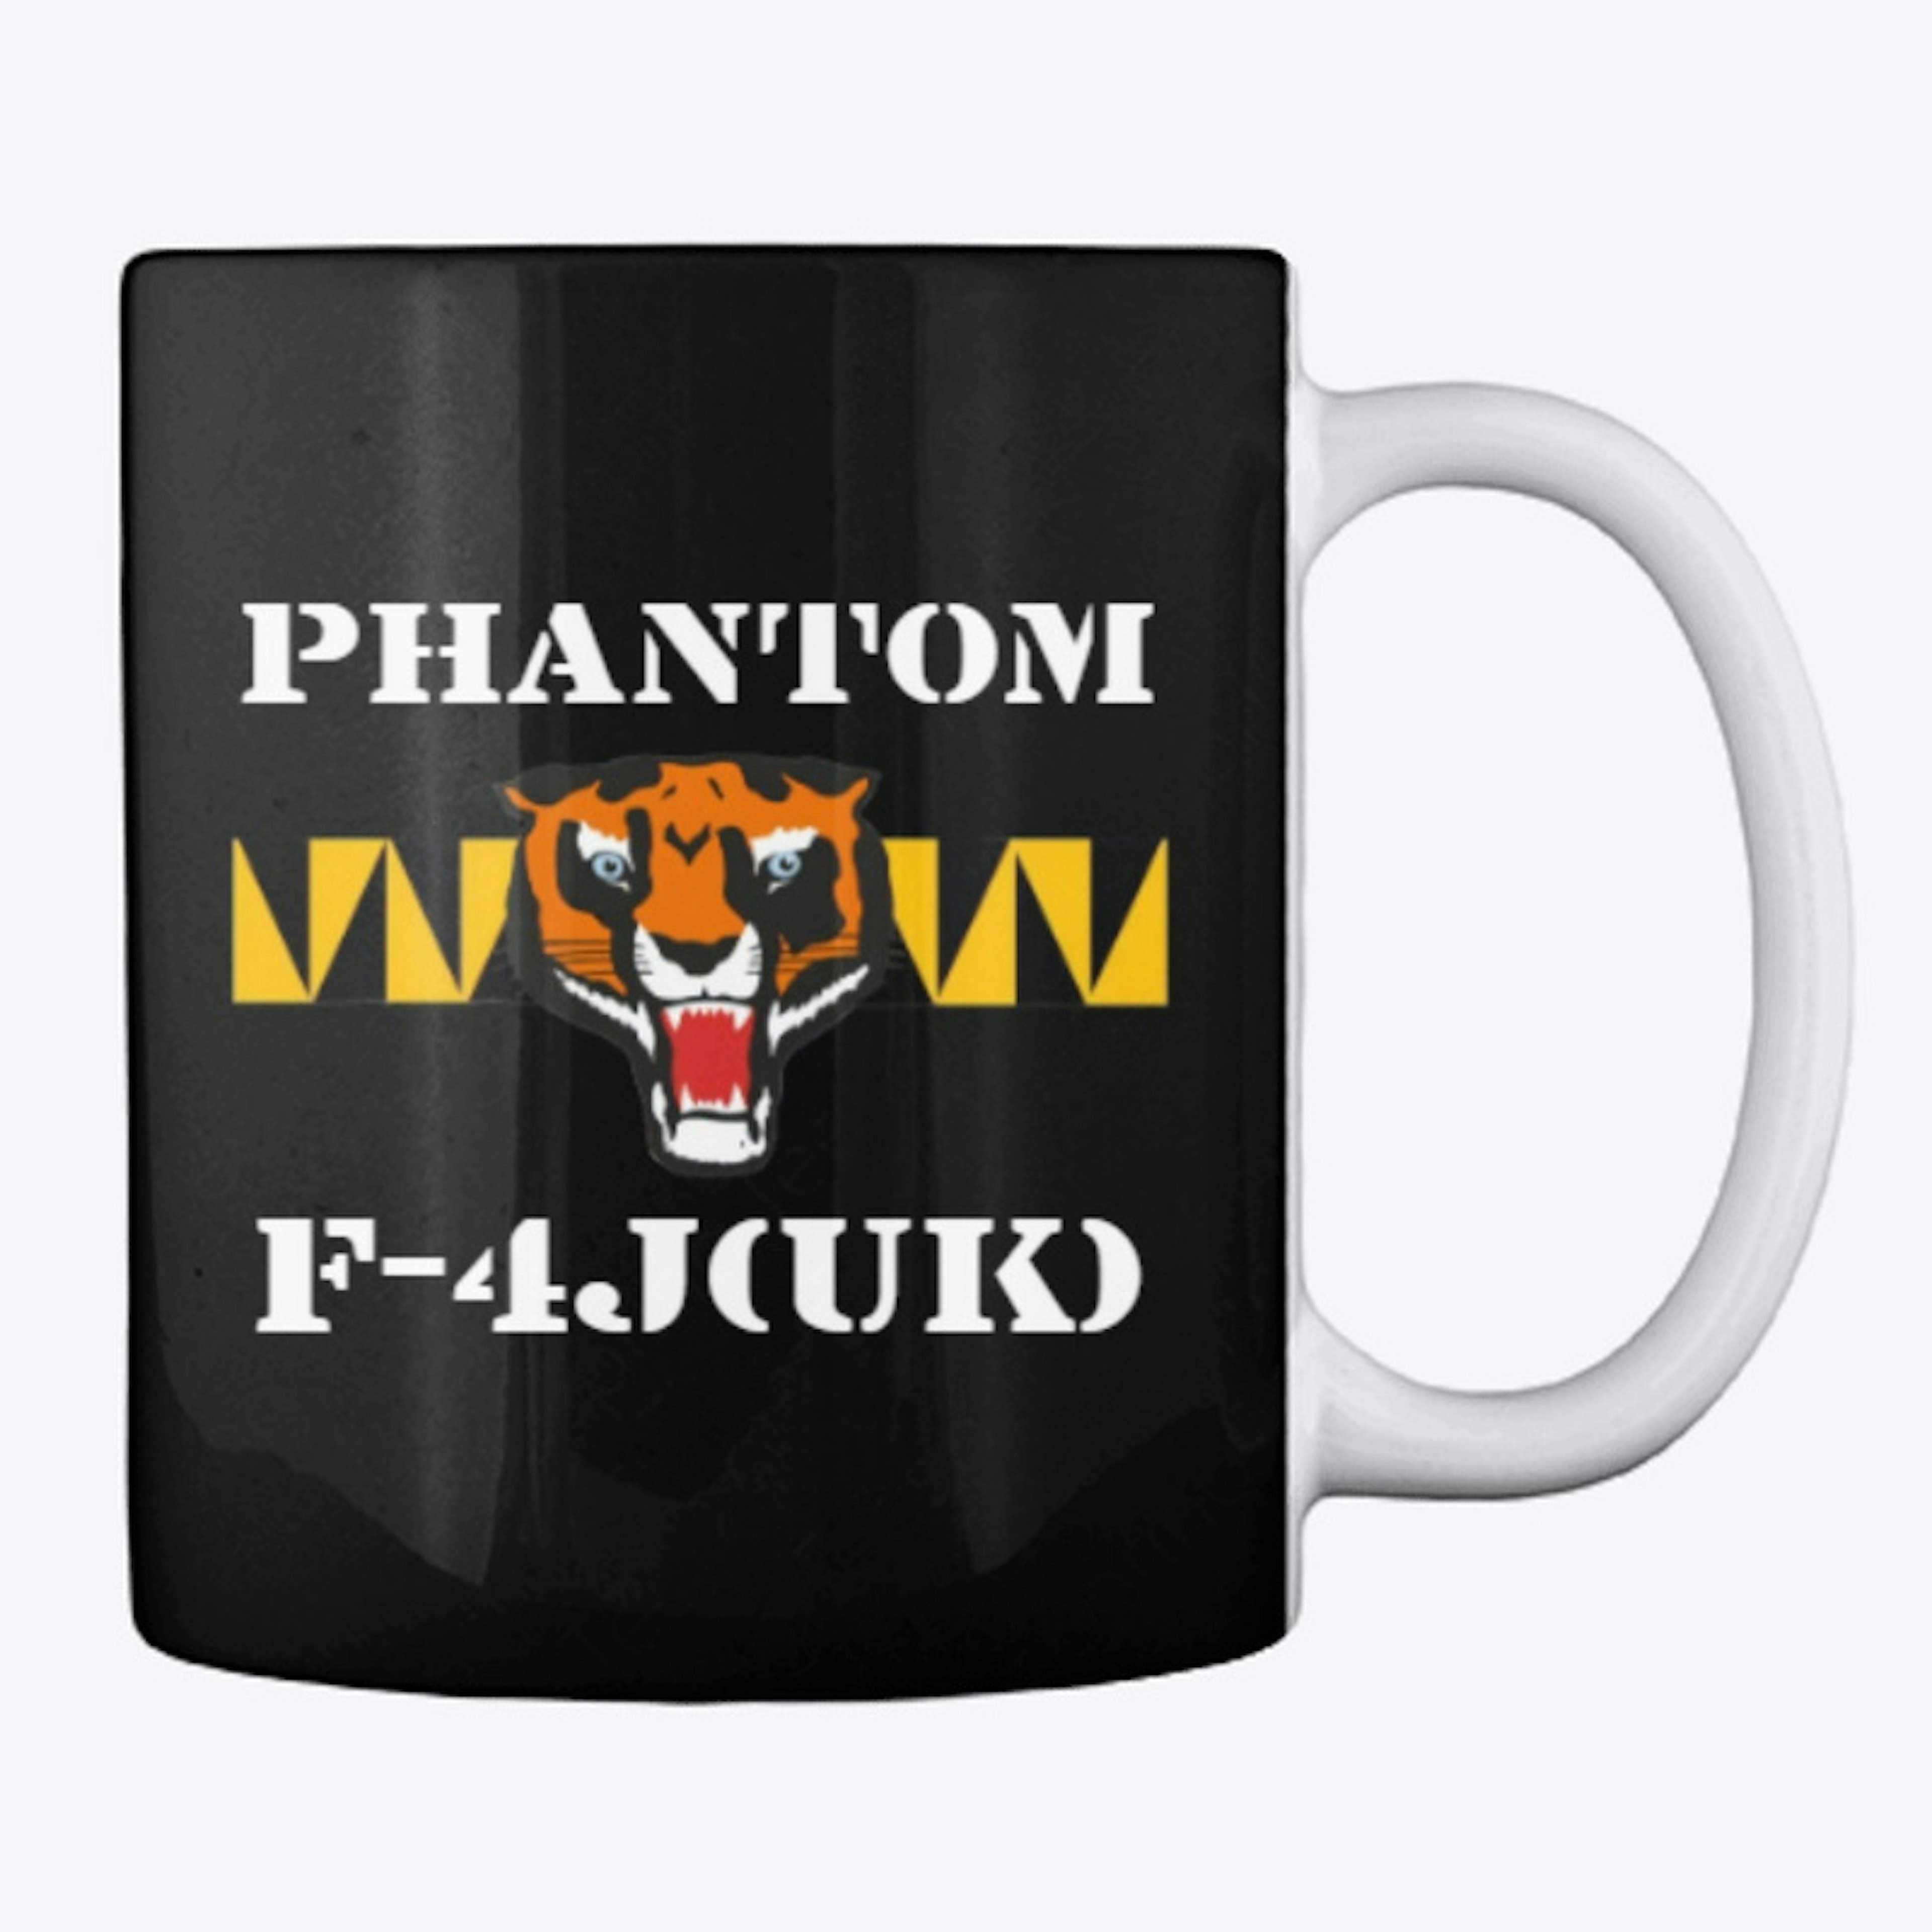 Phantom F-4J(UK) Mug